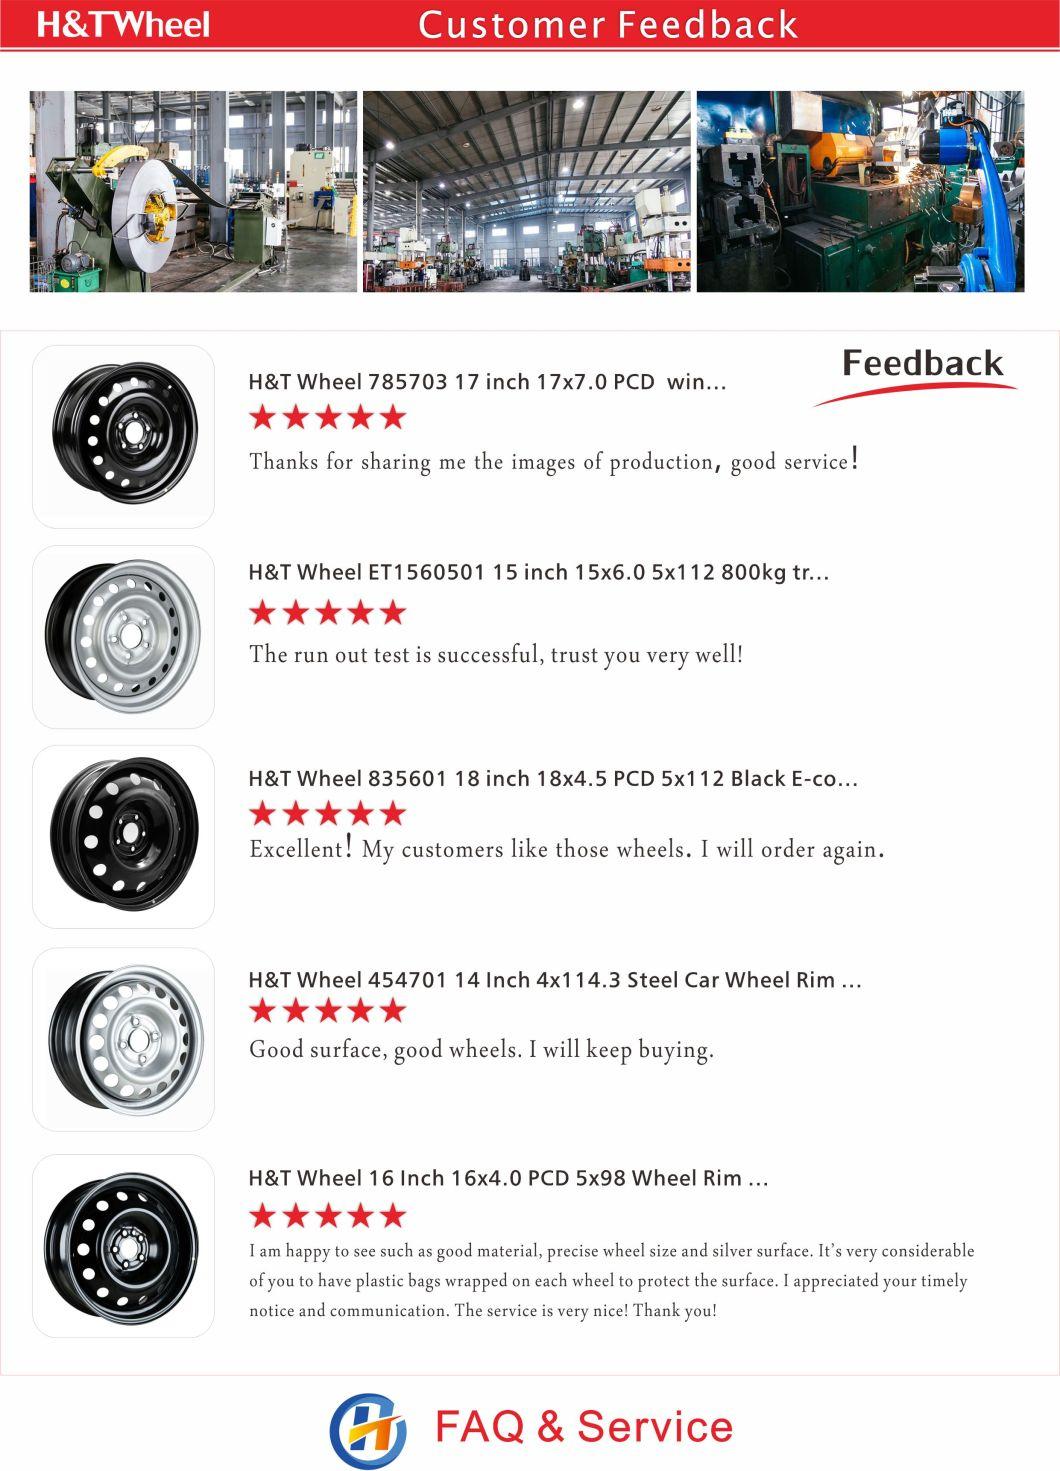 H&T Wheel 344105 Best Quality 13 Inch 13X5.0 4X98 Car Steel Wheel Rim